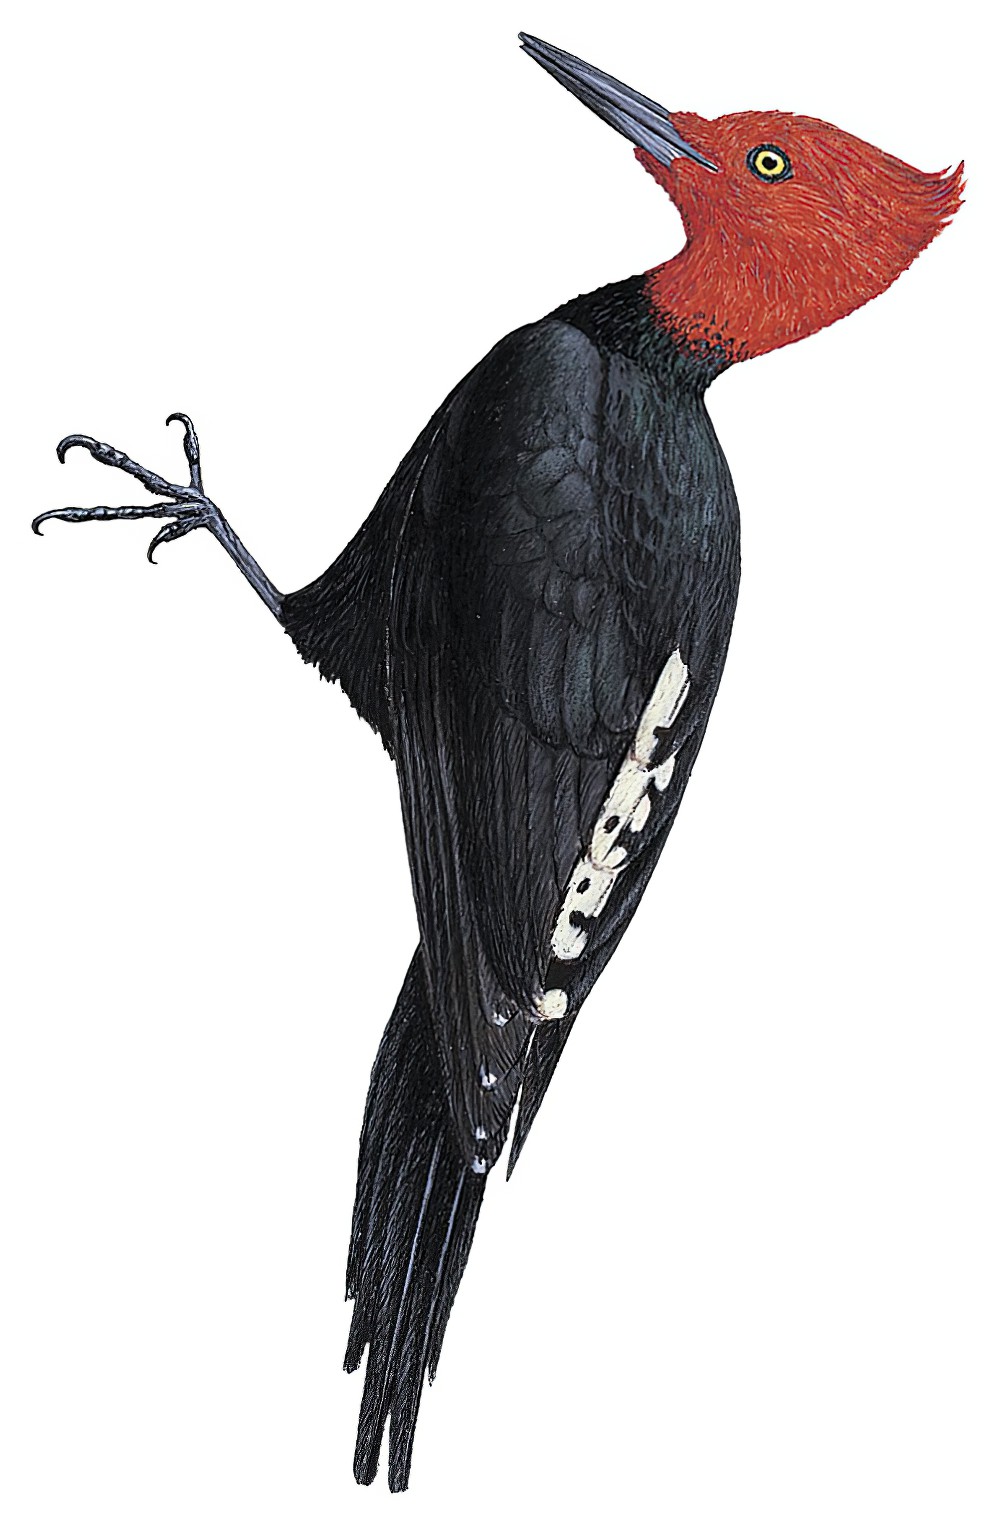 Magellanic Woodpecker / Campephilus magellanicus